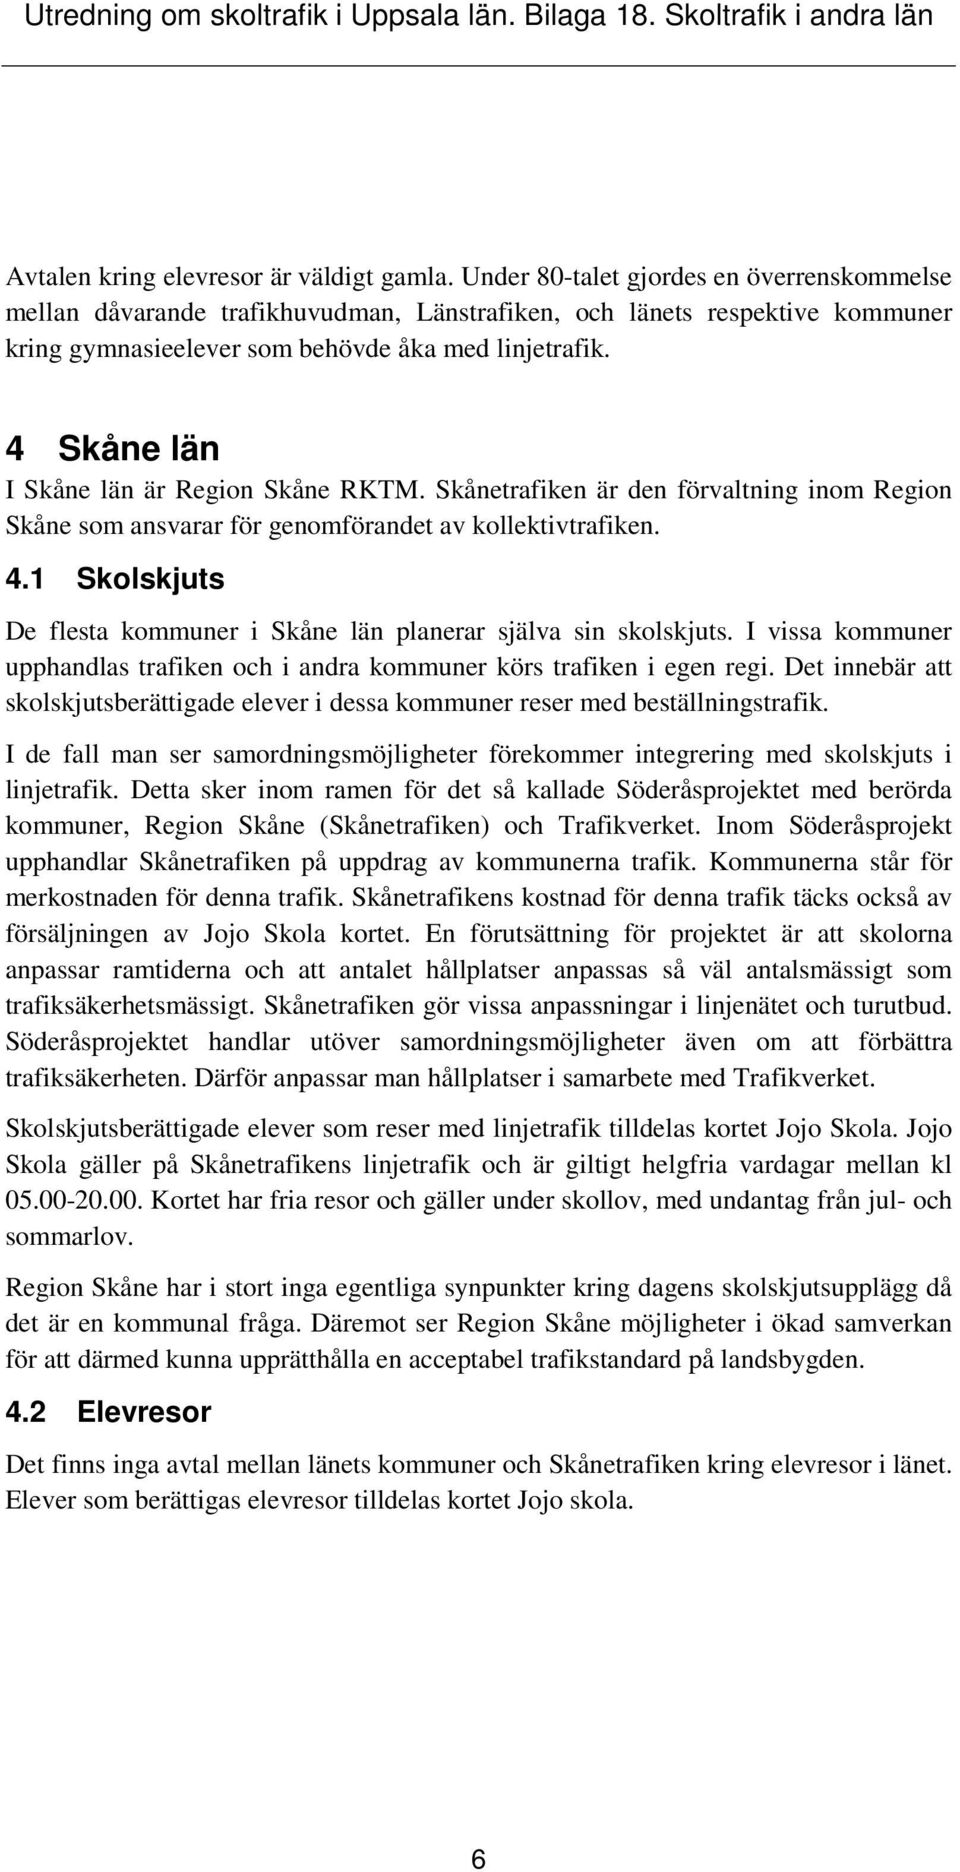 4 Skåne län I Skåne län är Region Skåne RKTM. Skånetrafiken är den förvaltning inom Region Skåne som ansvarar för genomförandet av kollektivtrafiken. 4.